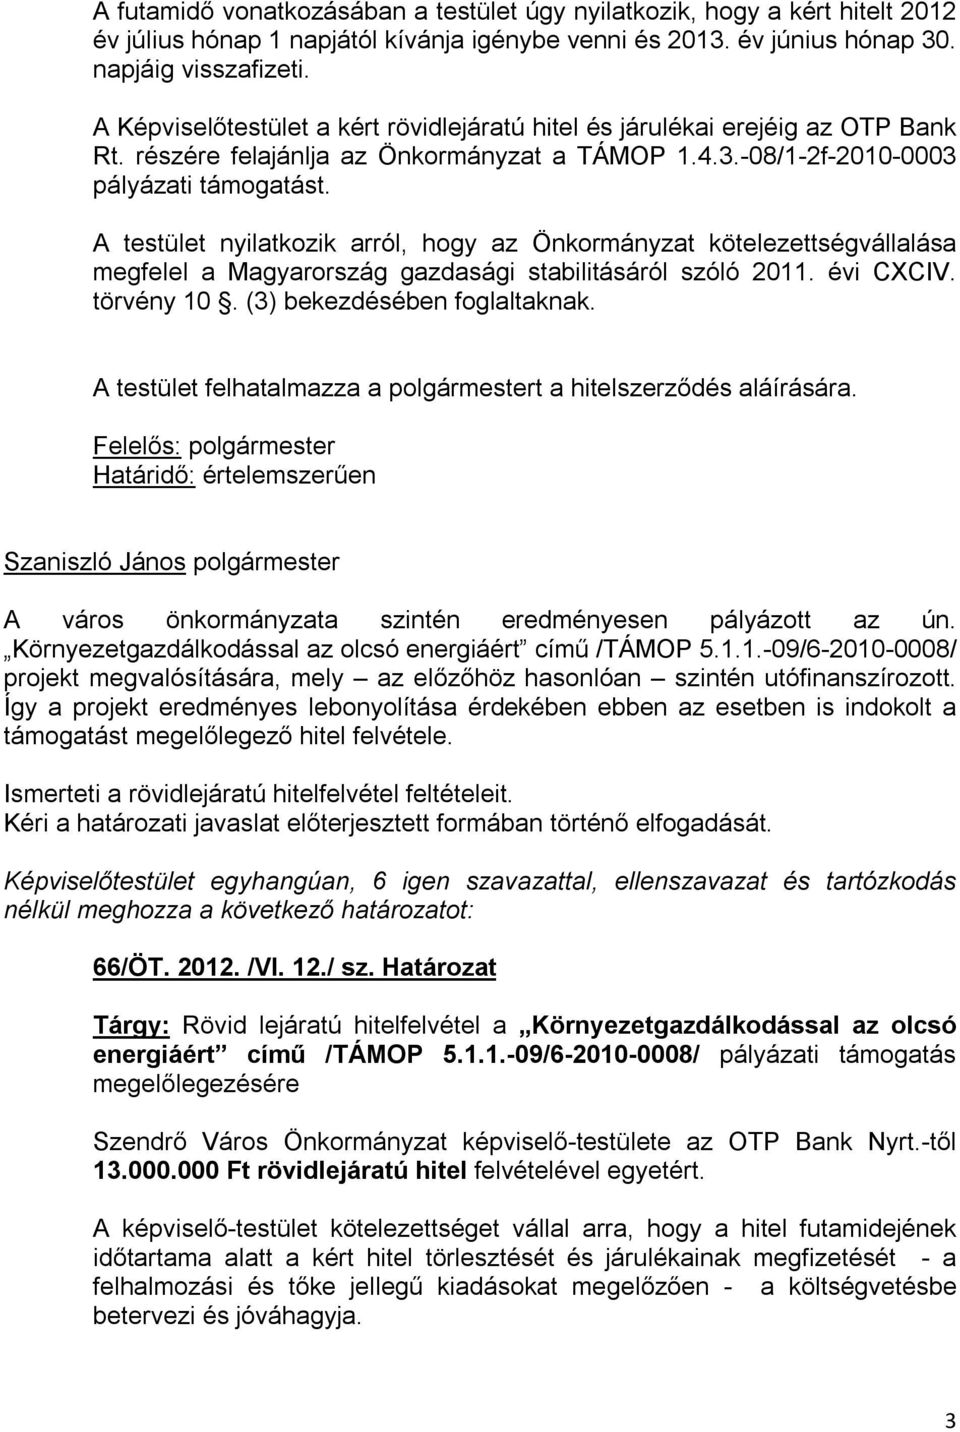 A testület nyilatkozik arról, hogy az Önkormányzat kötelezettségvállalása megfelel a Magyarország gazdasági stabilitásáról szóló 2011. évi CXCIV. törvény 10. (3) bekezdésében foglaltaknak.